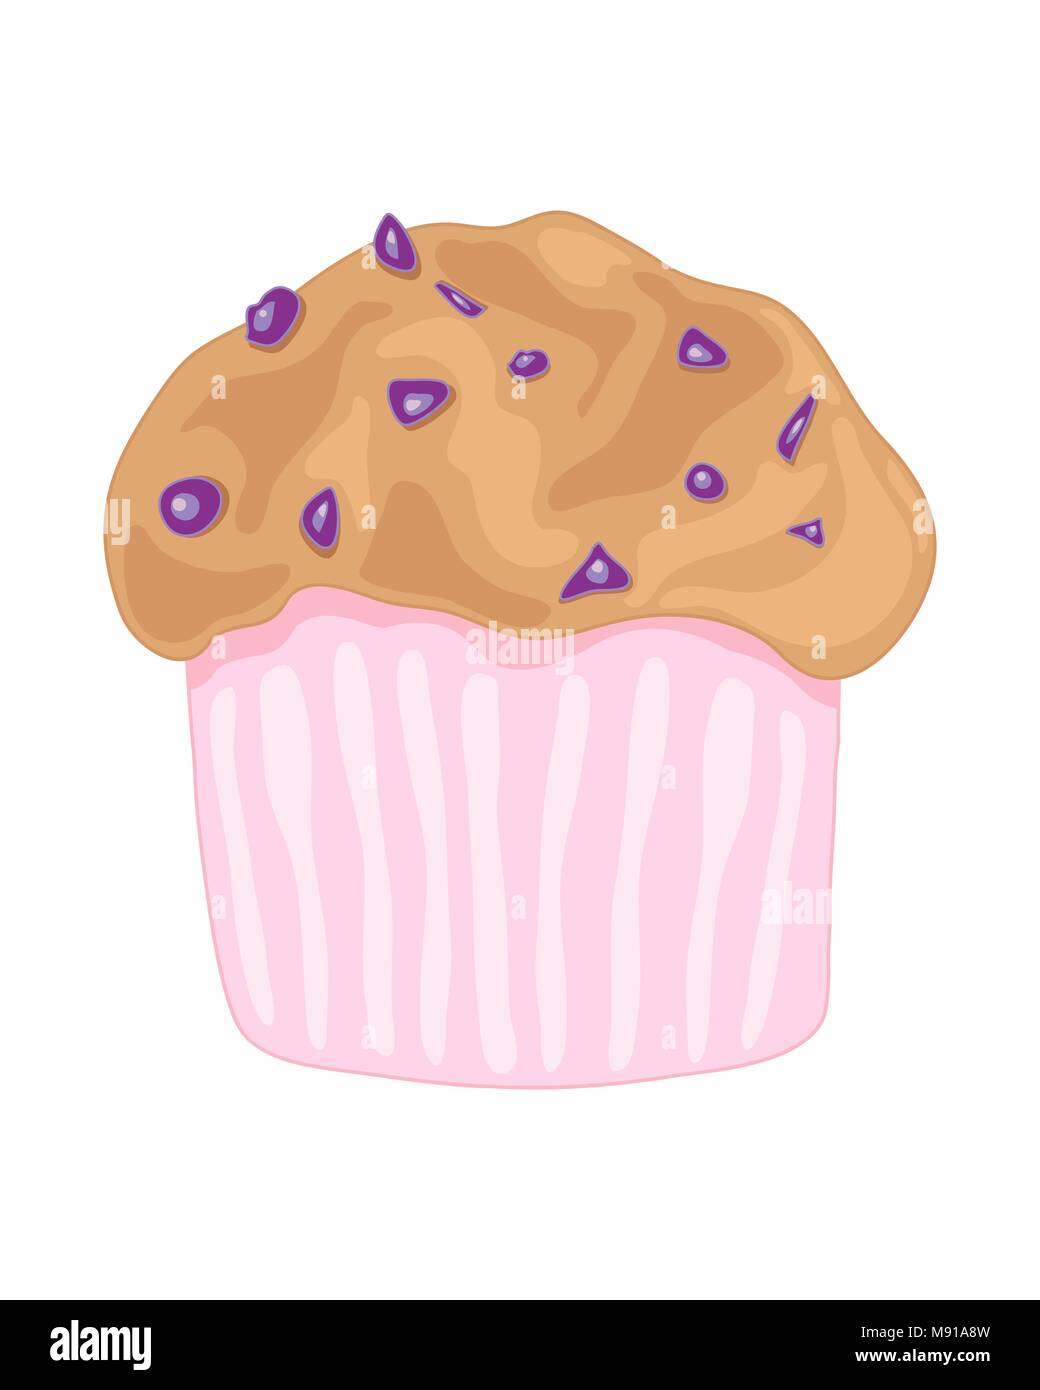 Un vecteur illustration en eps 8 format d'un délicieux muffins aux bleuets dans un étui rose sur fond blanc Illustration de Vecteur